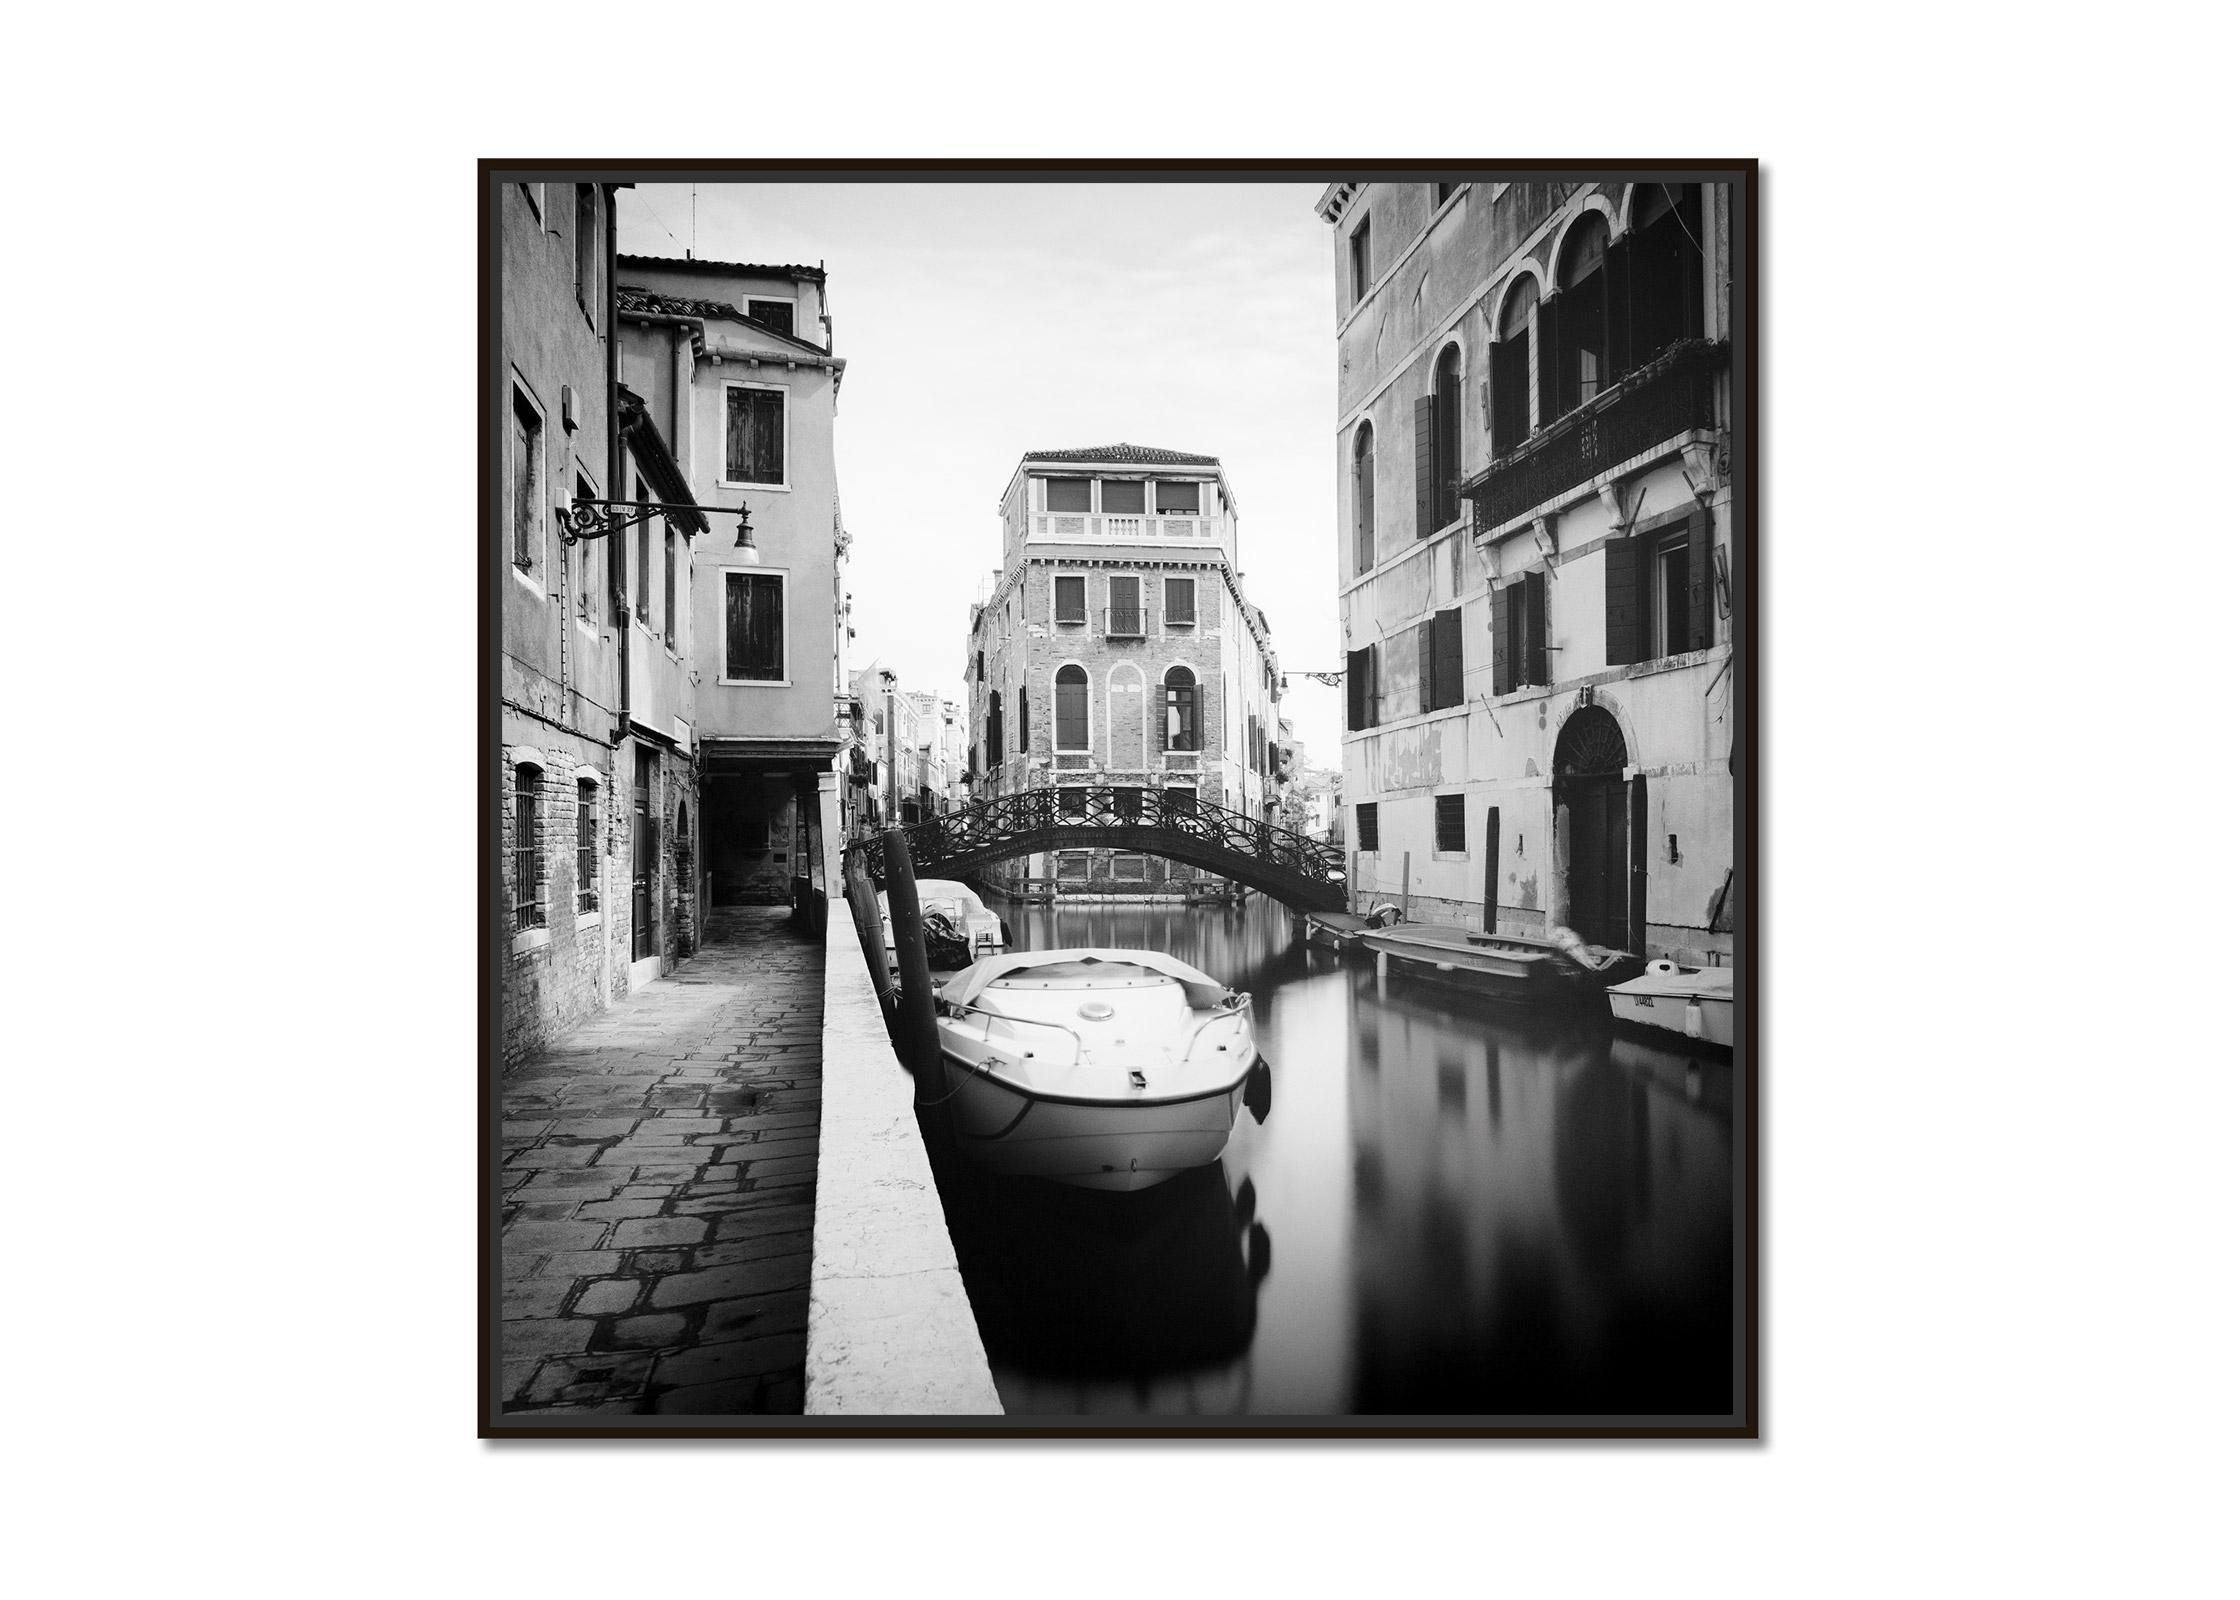 Alte schmiedeeiserne Brücke, Venedig, Italien, Schwarz-Weiß-Stadtlandschaftsfotografie – Photograph von Gerald Berghammer